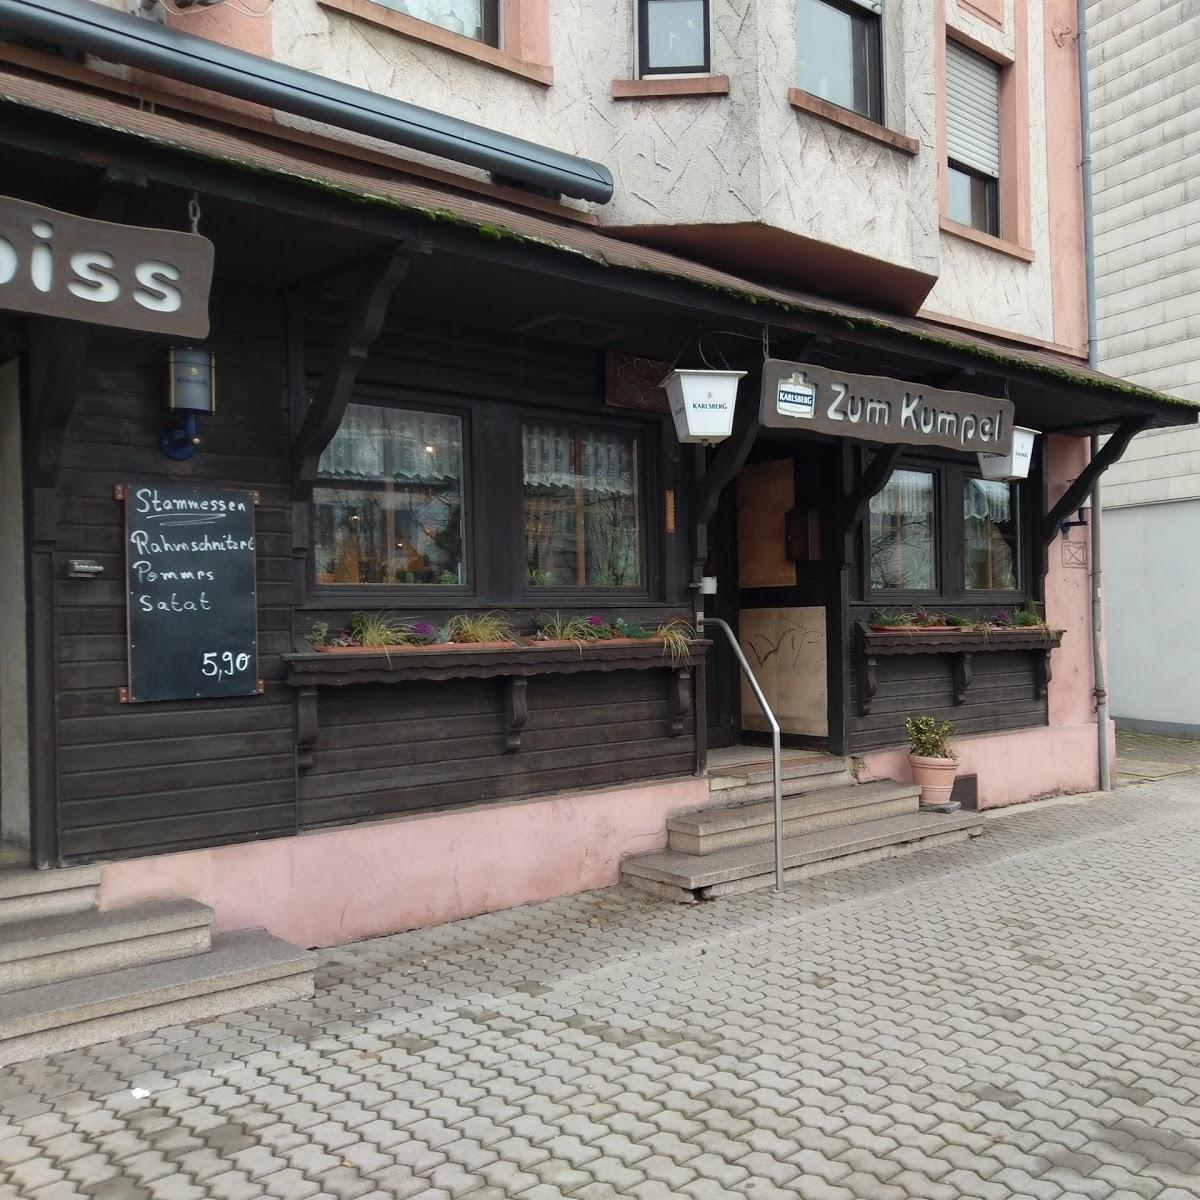 Restaurant "Zum Kumpel" in Völklingen